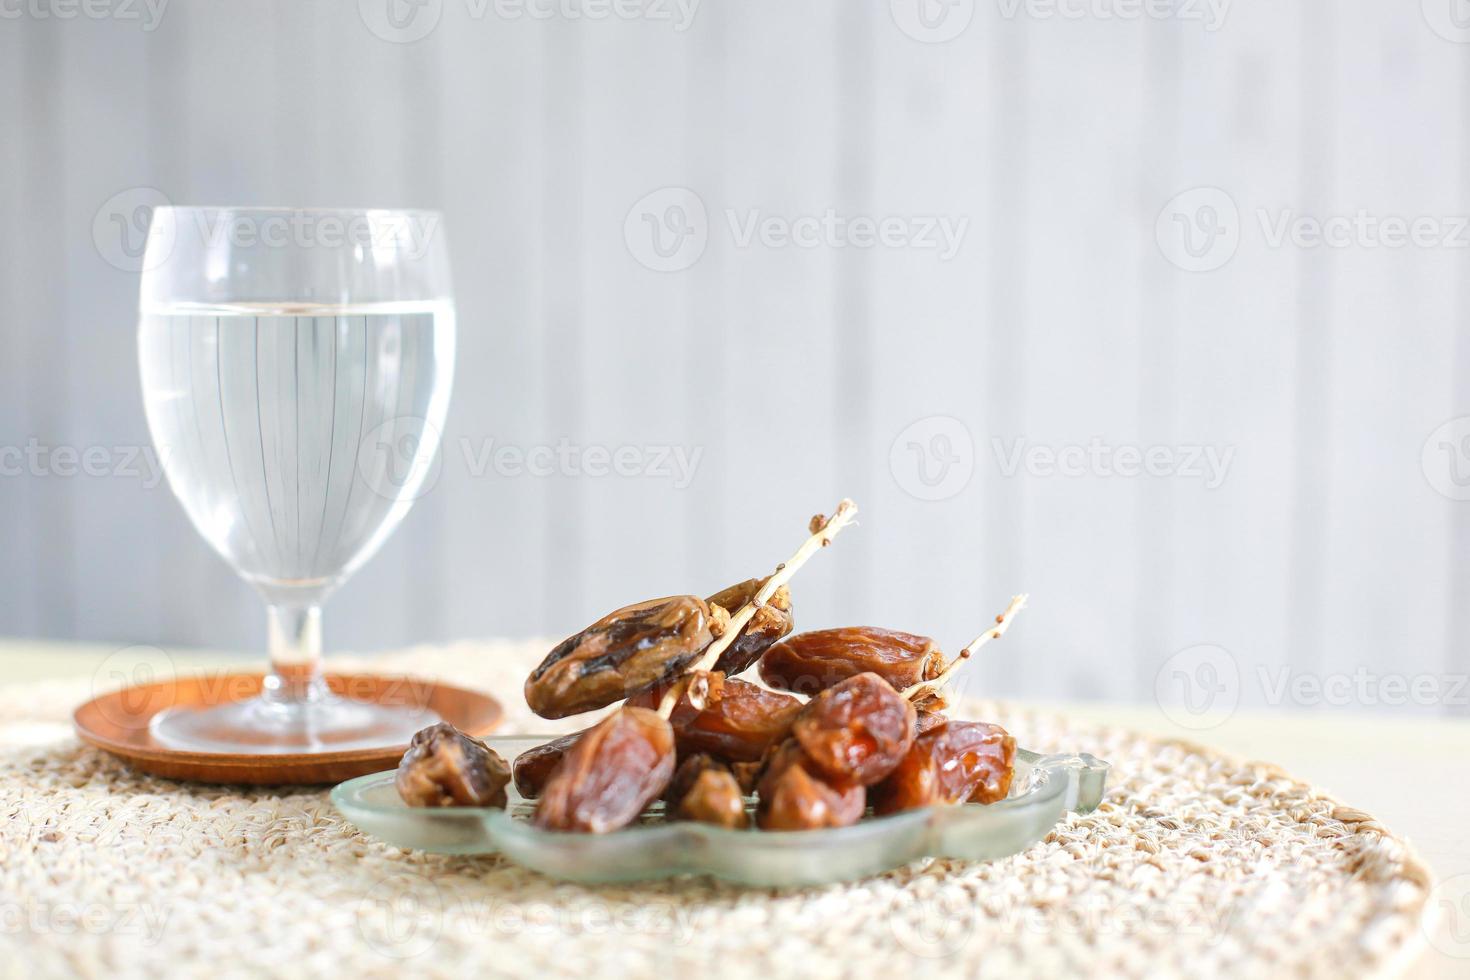 glas mineraalwater en dadels. traditionele ramadan, iftar-maaltijd. ramadan kareem vastenmaand concept foto